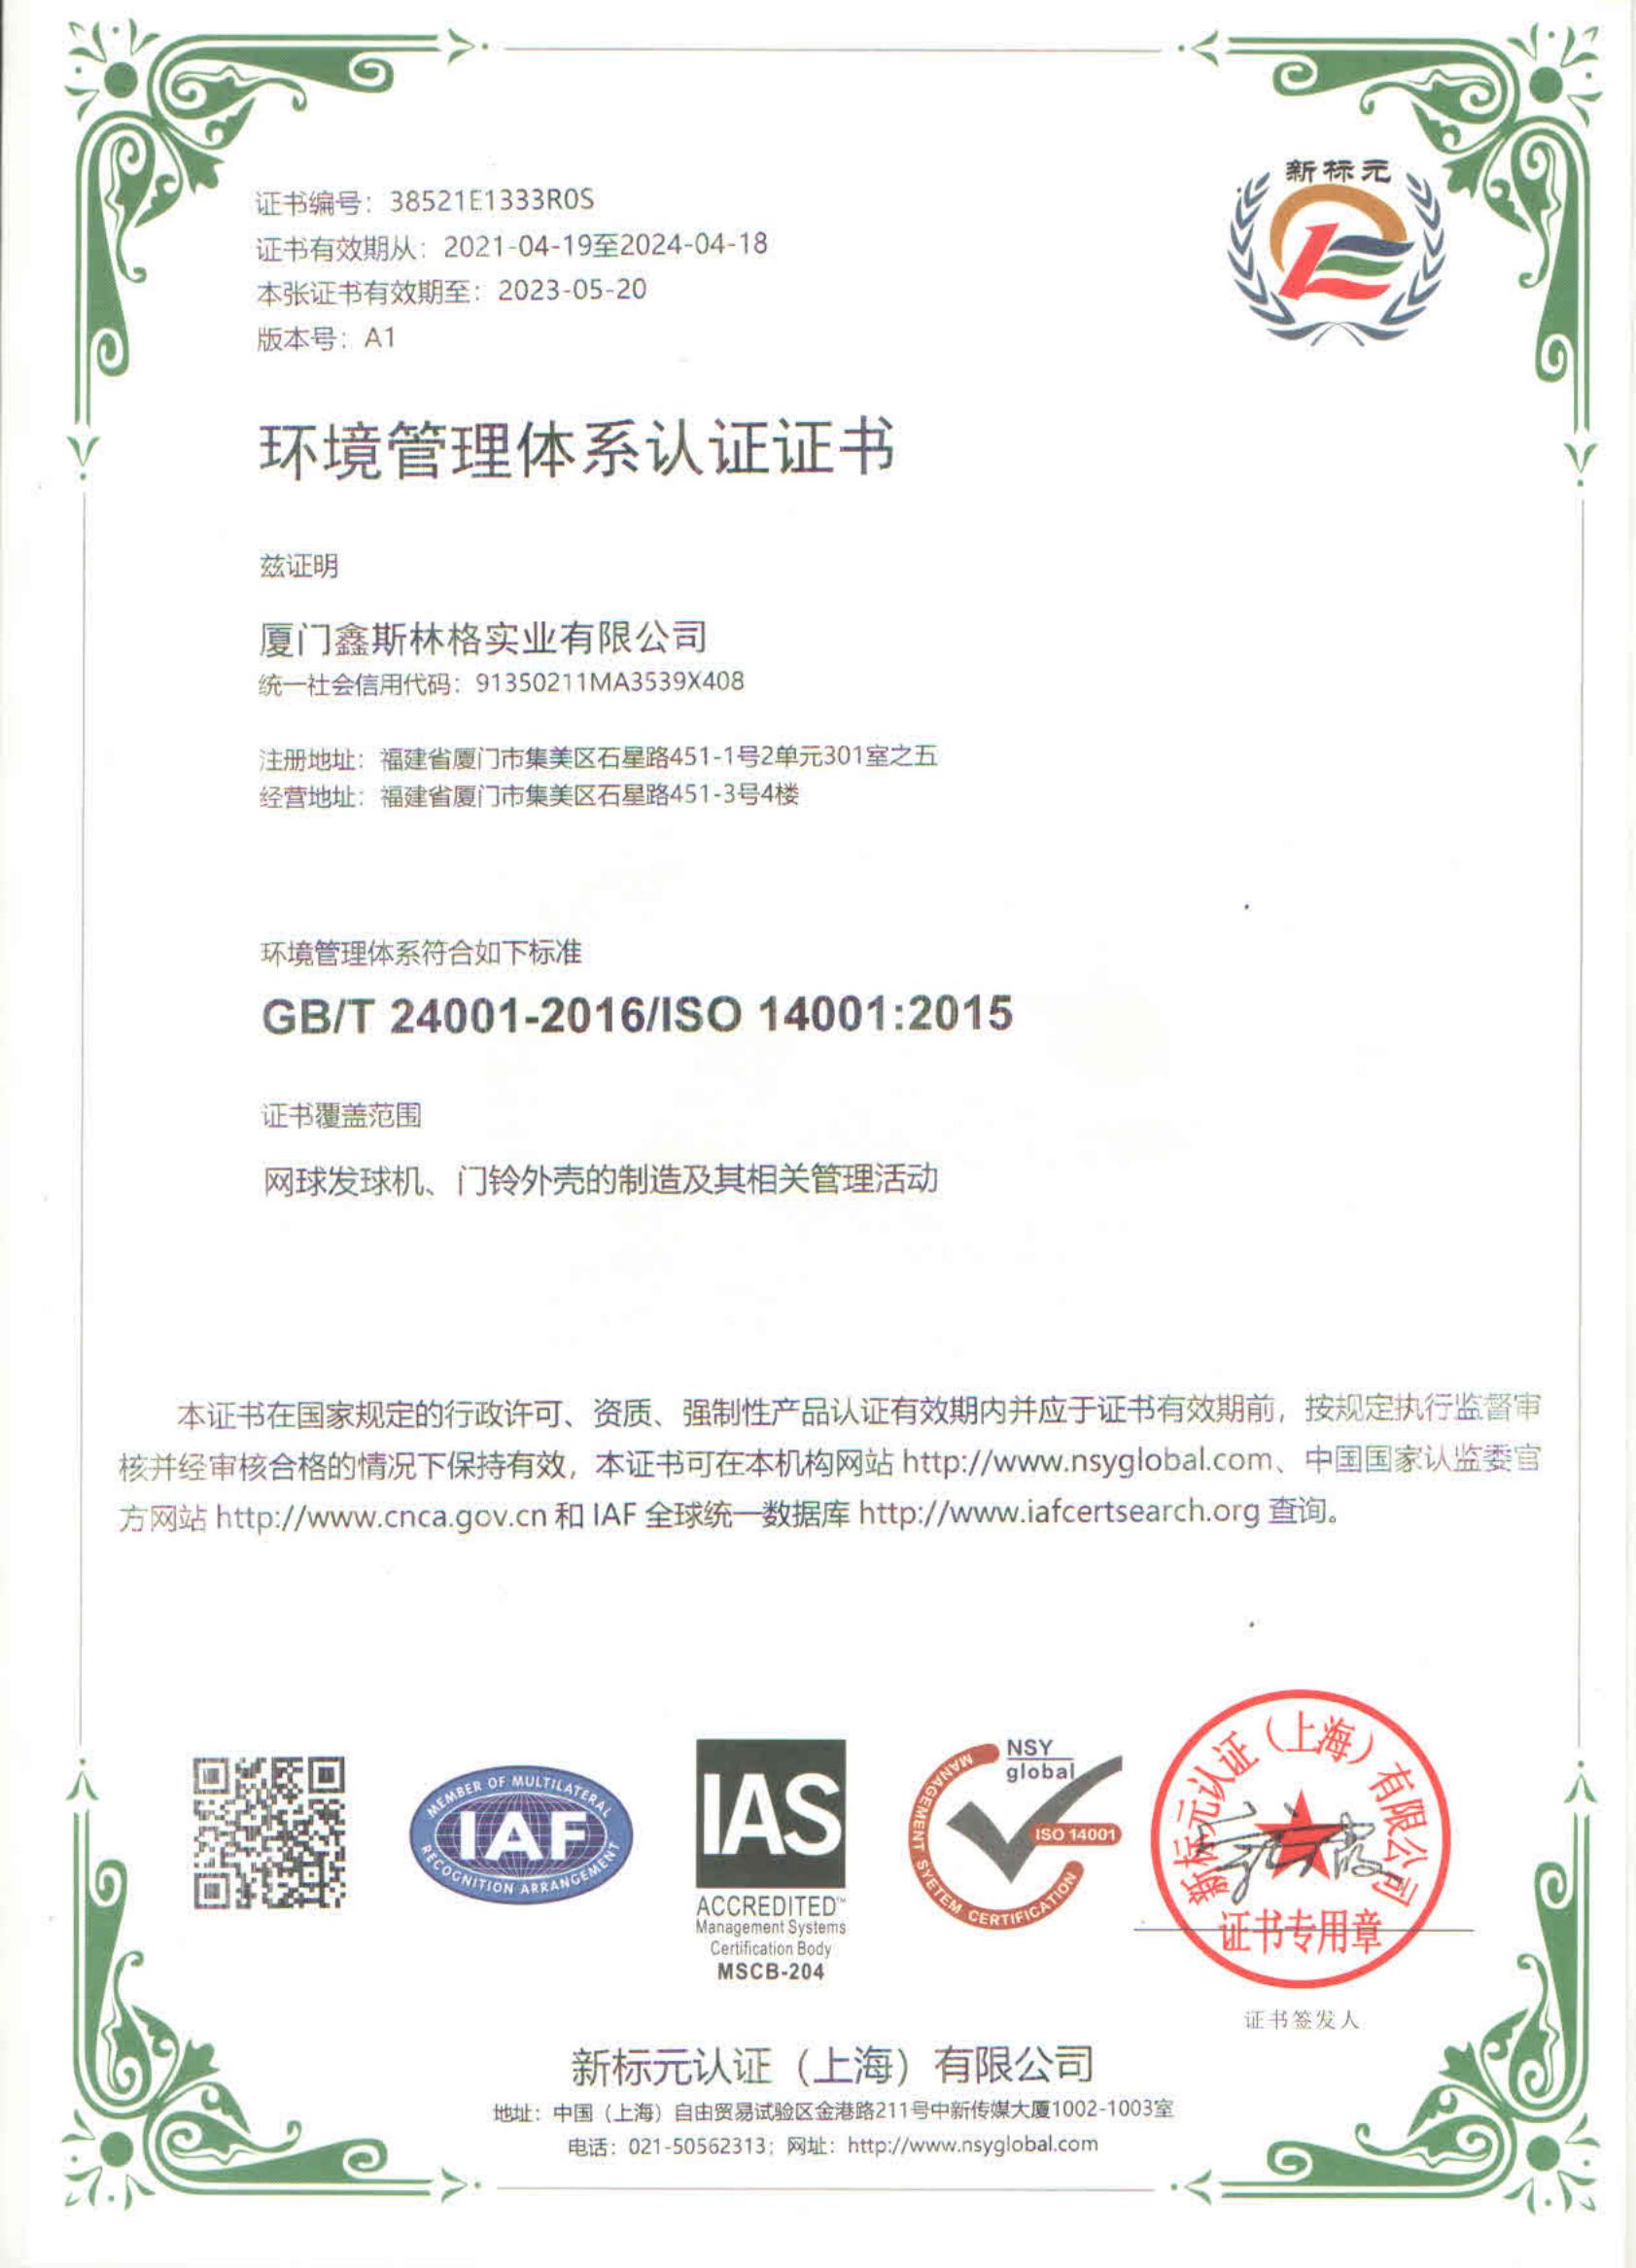 鑫 斯林格 - 环境 管理 体系 认证 证书 ISO 14001 中 英文 _00